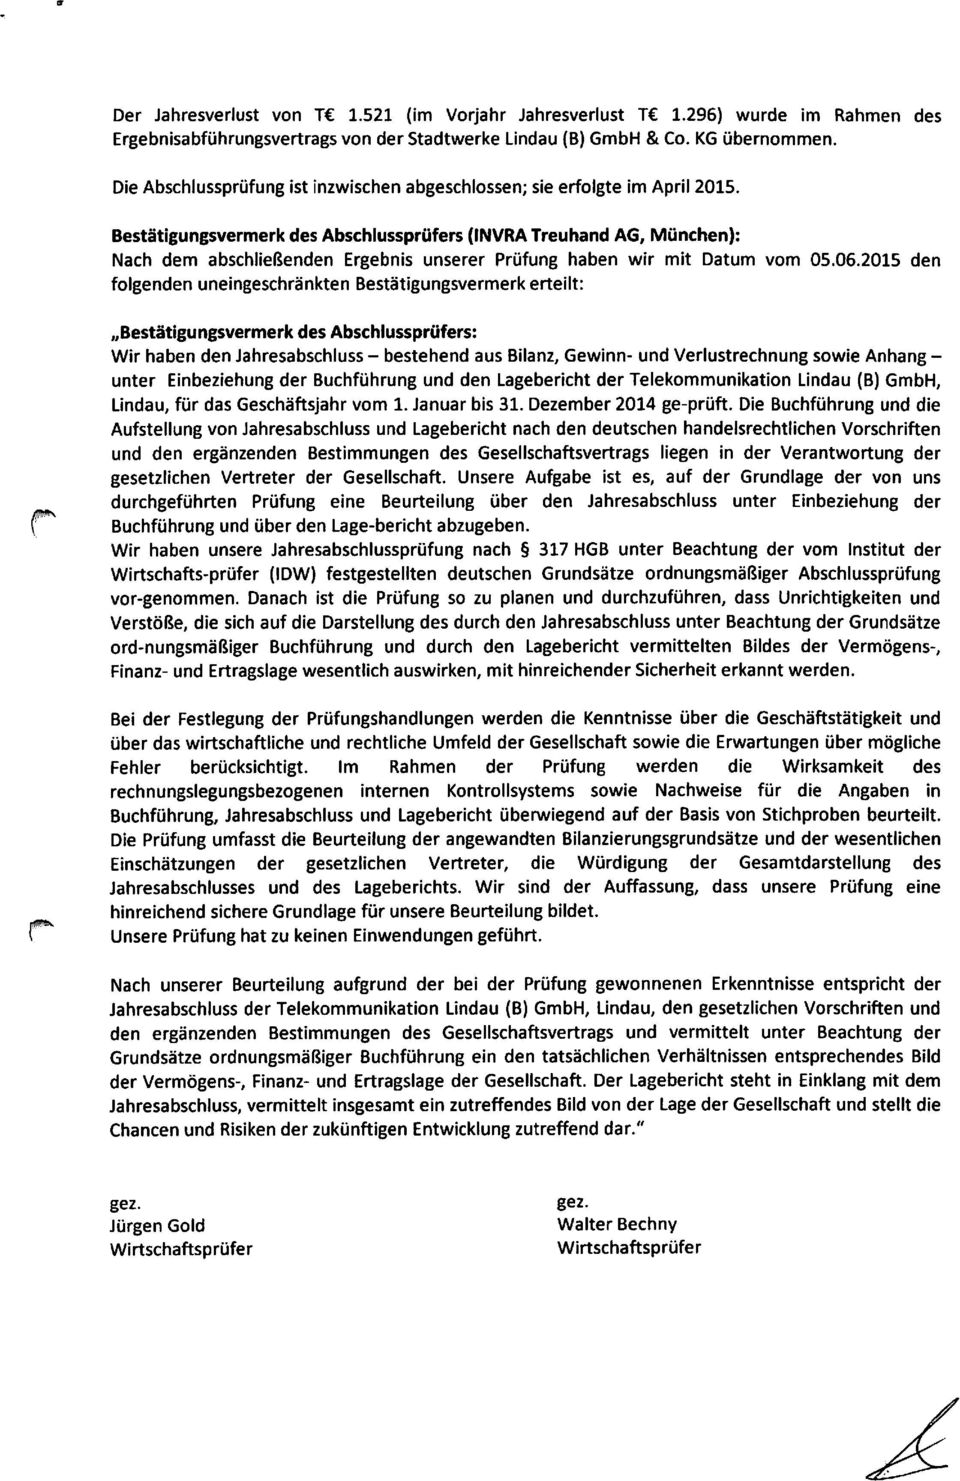 Bestätigungsvermerk des Abschlussprüfers (INVRA Treuhand AG, München): Nach dem abschließenden Ergebnis unserer Prüfung haben wir mit Datum vom 05.06.